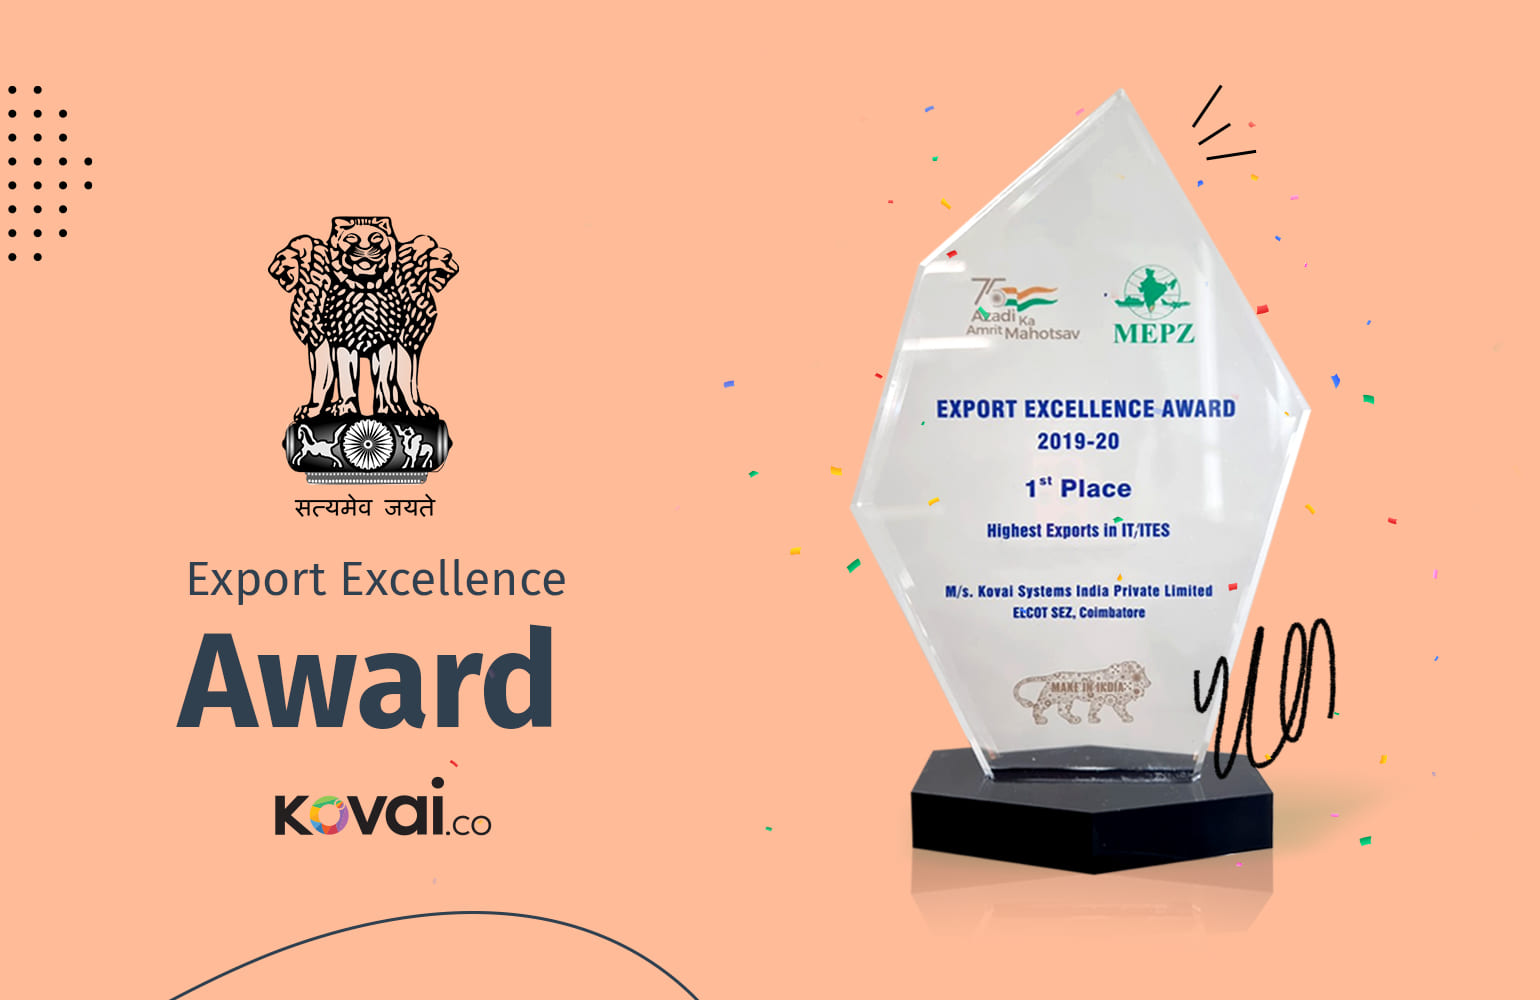 Kovai.co - Export Excellence Award